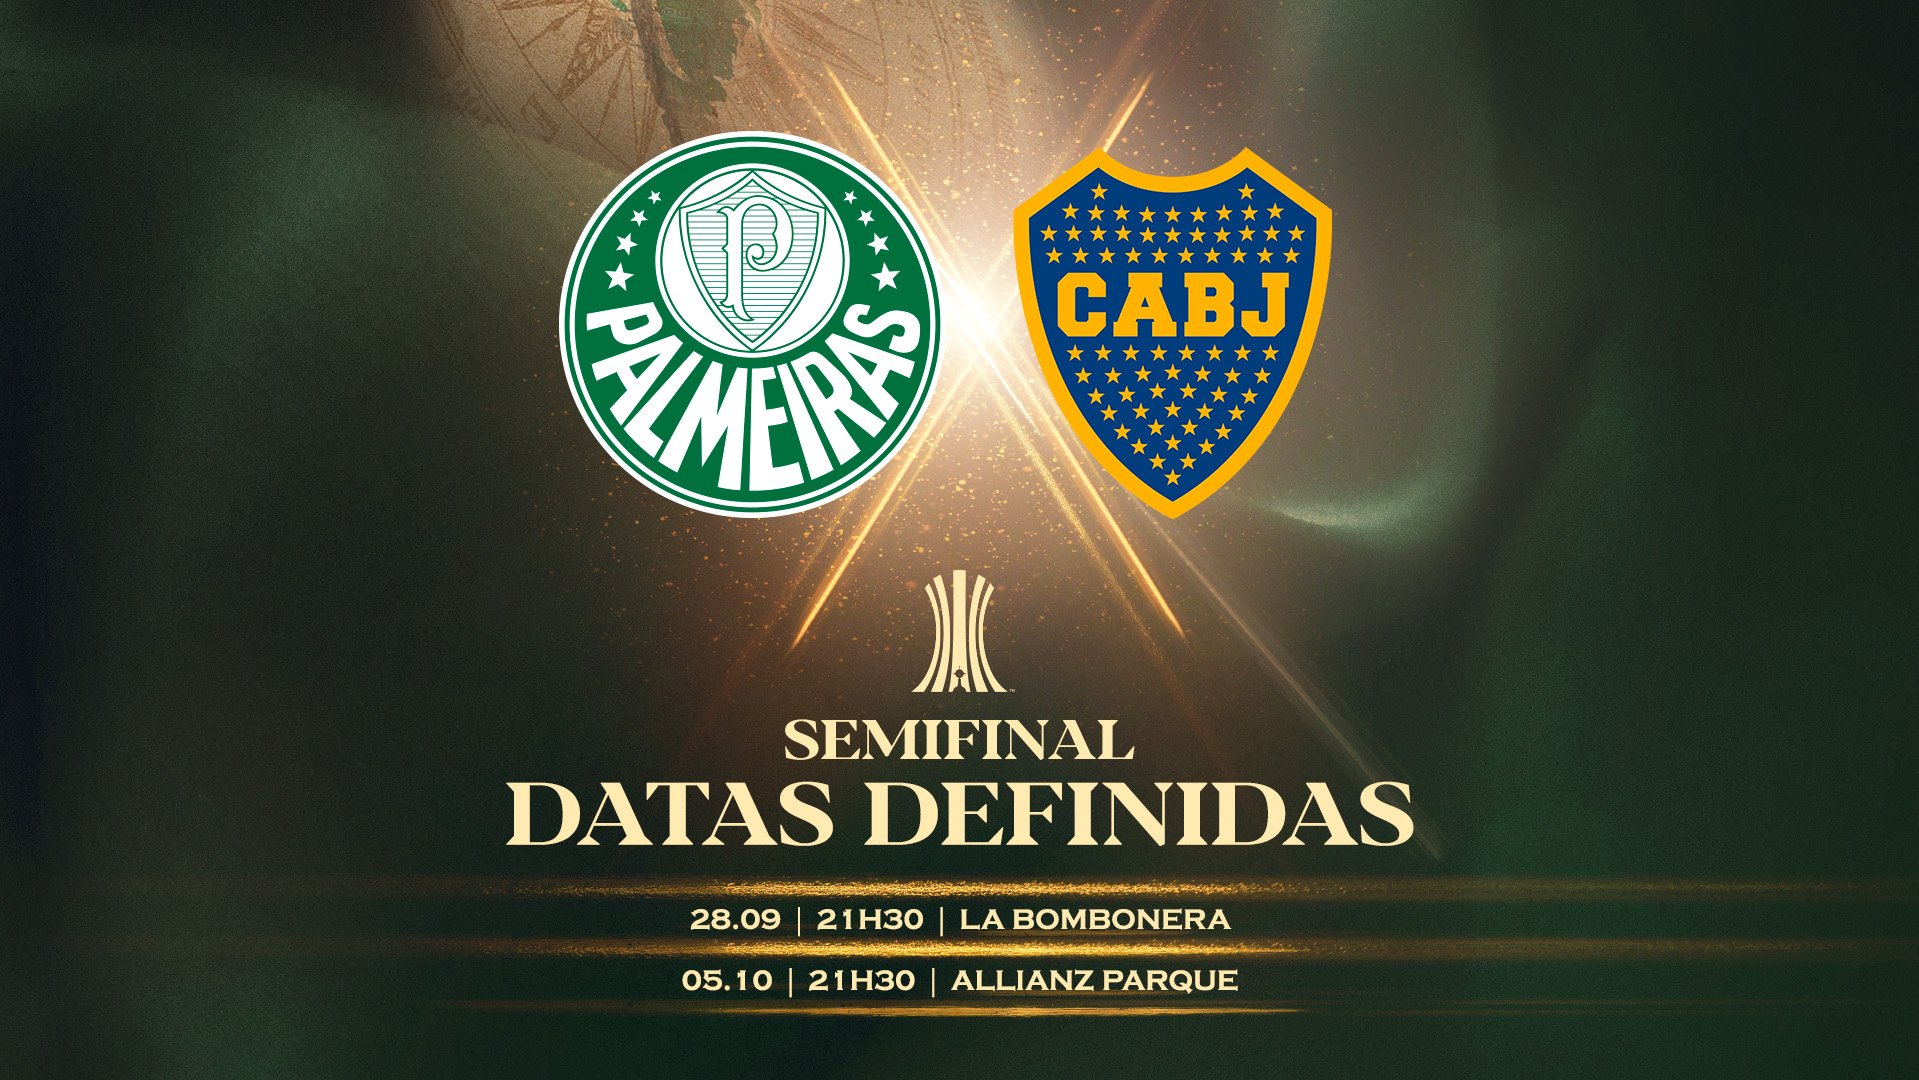 Murilo Dias on X: "DATAS DEFINIDAS! Palmeiras e Boca Juniors se enfrentam  nos dias 28/09 e 05/10 em busca de uma vaga na final da Libertadores! OBS:  Muuuuuuito forte ler "La Bombonera"